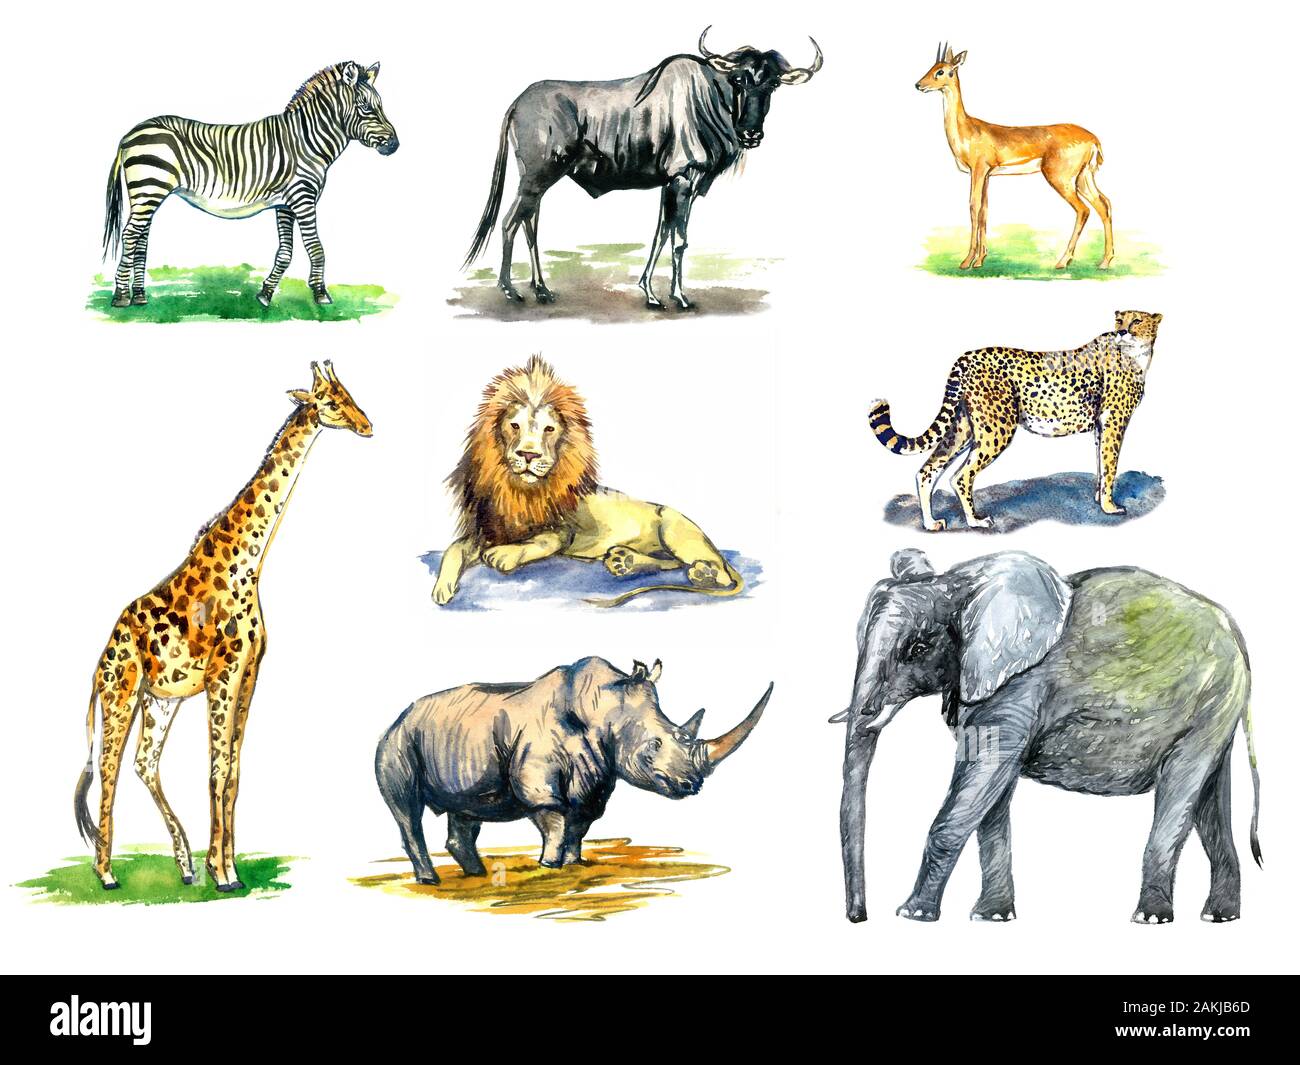 Animaux sauvages, collection d'Afrique zèbre, des gnous, des antilopes d'Oribi, girafe, lion, éléphant, rhinocéros, guépards, peinte à l'aquarelle illustration Banque D'Images